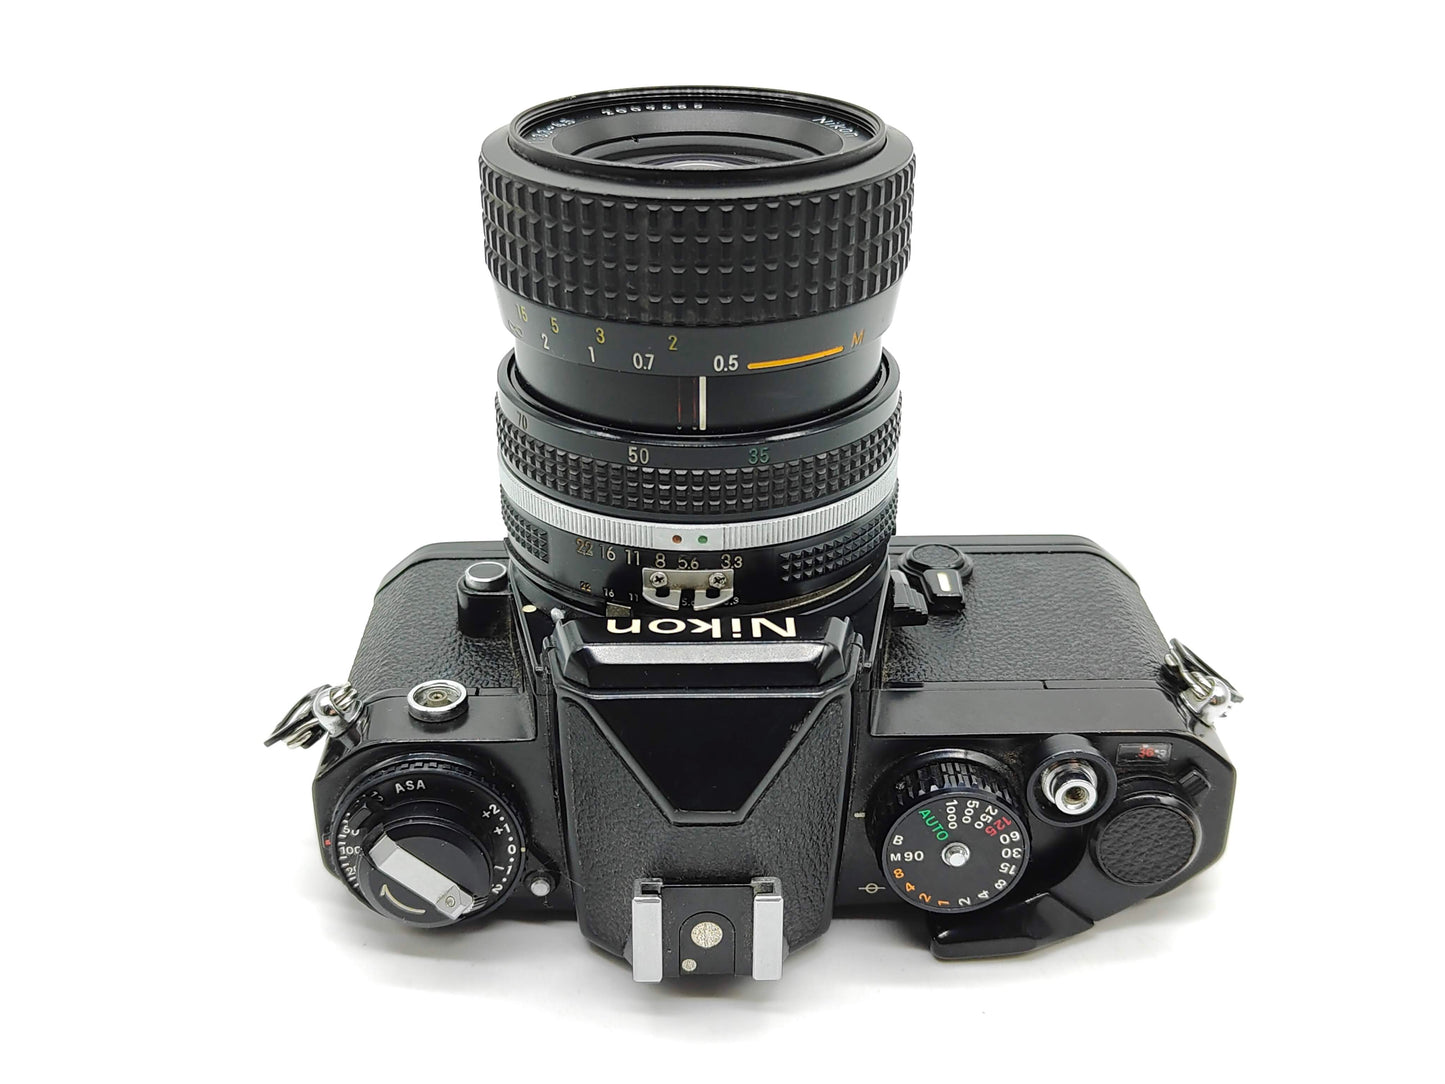 Nikon FE SLR film camera with 35-70mm Nikkor lens